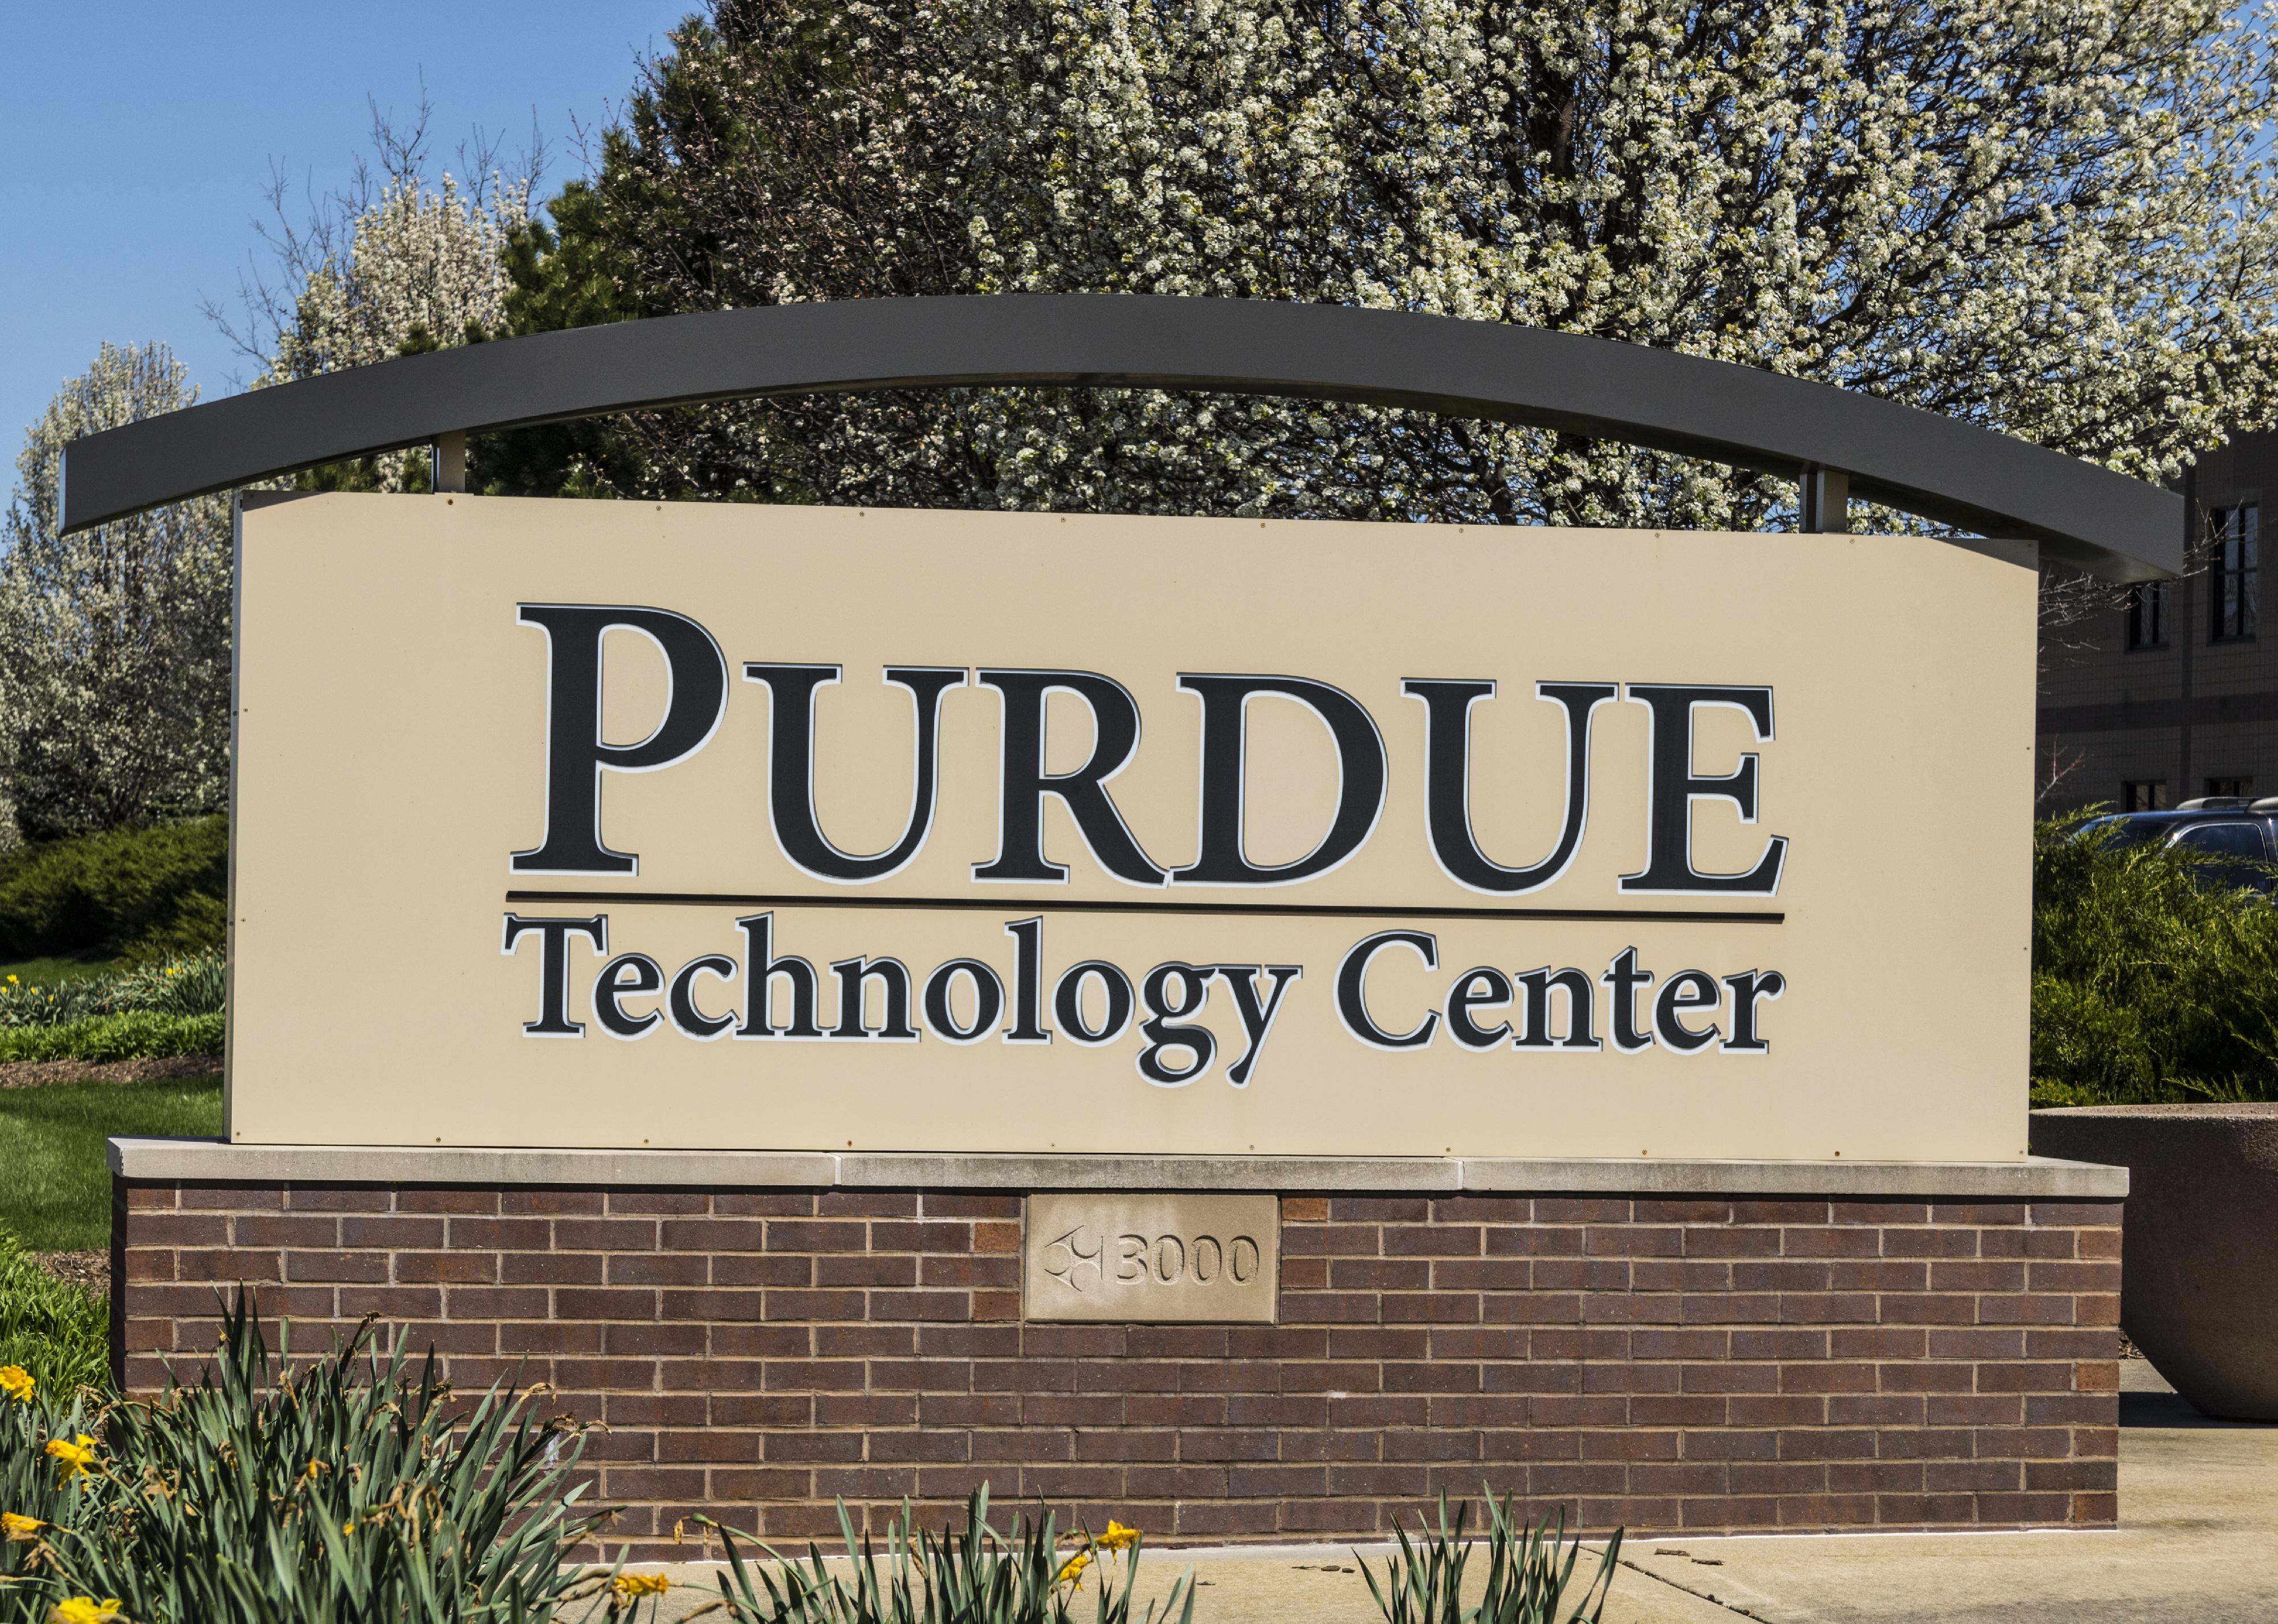 Purdue Technology Center sign.